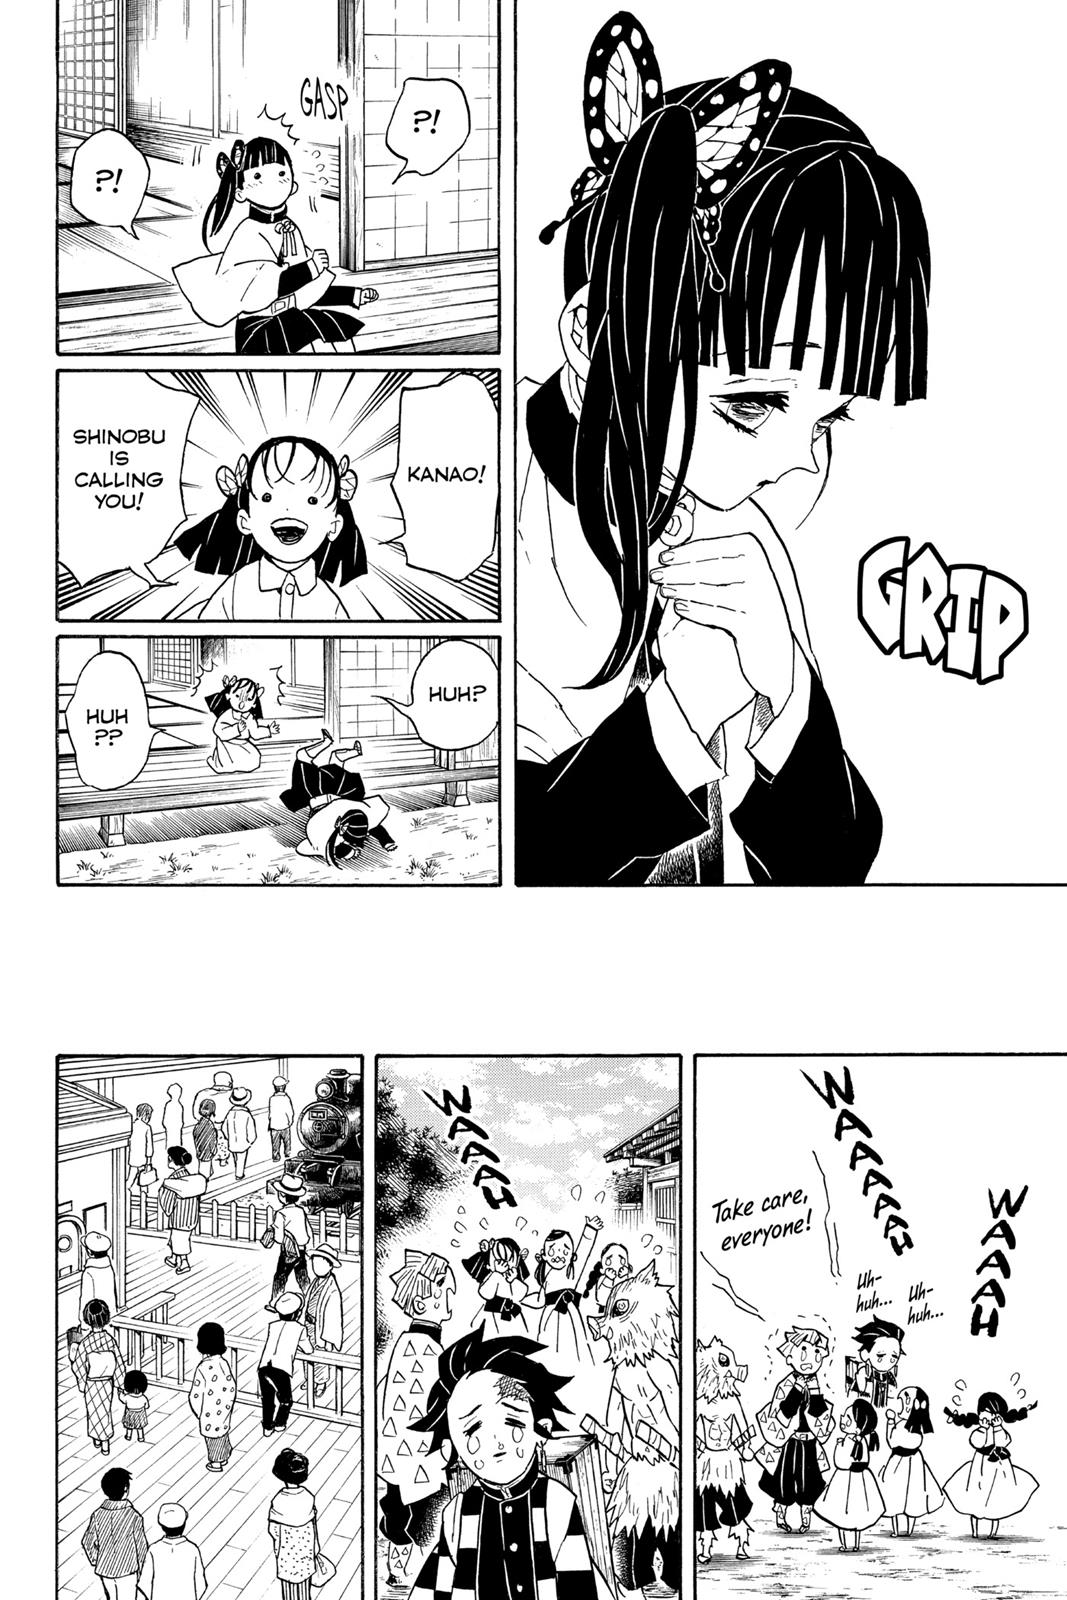 Demon Slayer Manga Manga Chapter - 53 - image 22